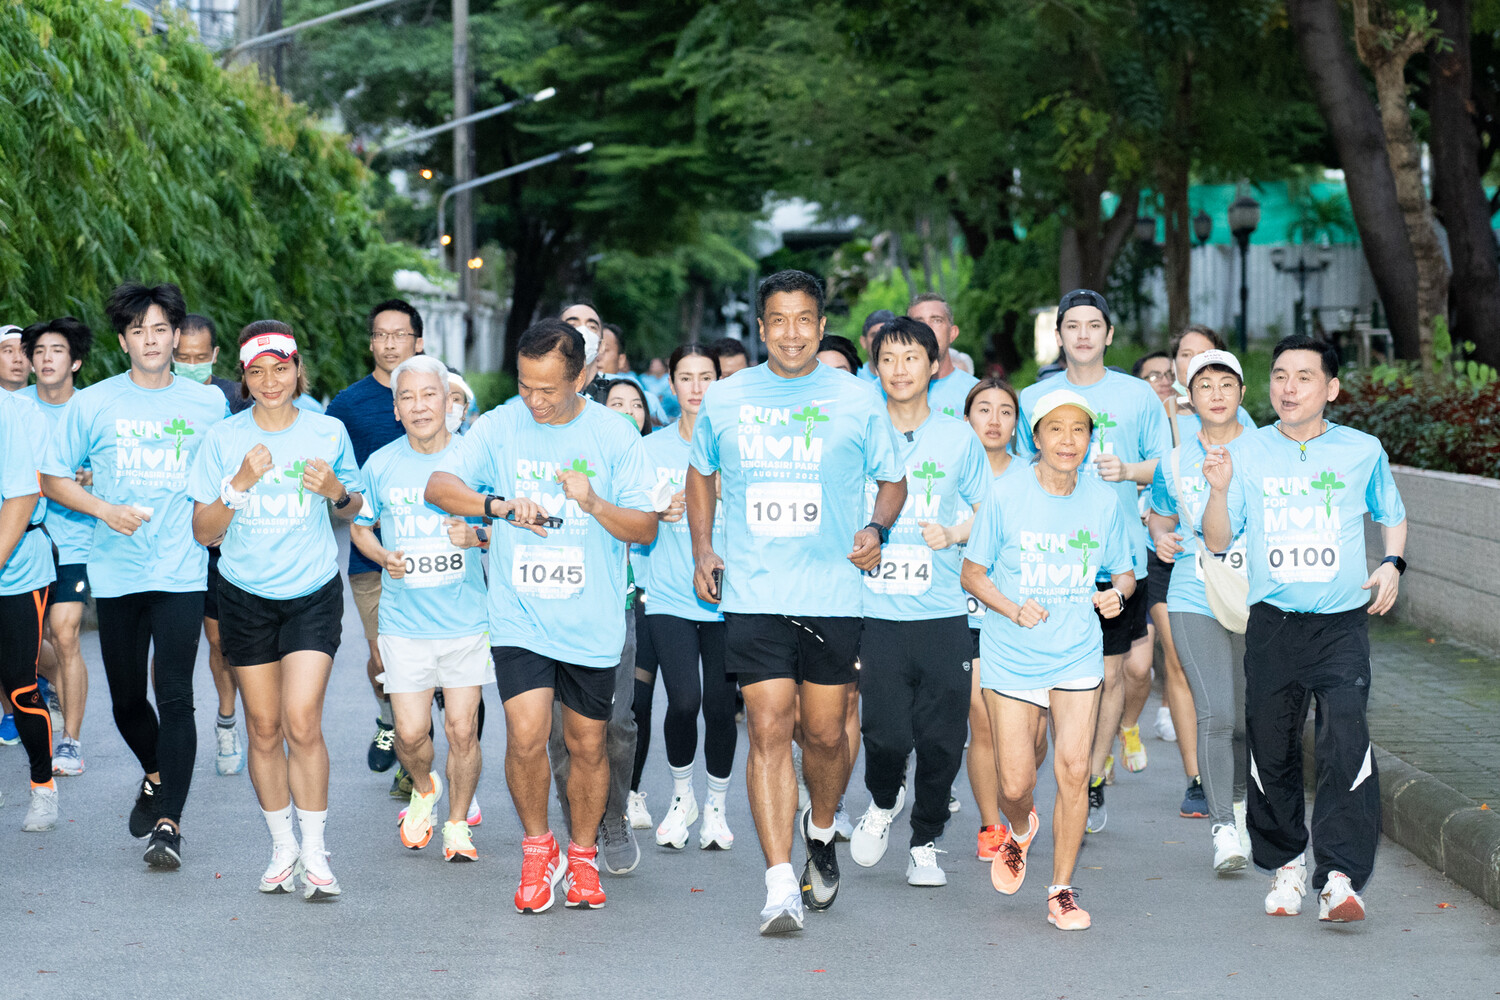 ท๊อป จิรายุส ร่วมวิ่งกับ ผู้ว่าฯ กทม. ชัชชาติ สิทธิพันธุ์ ในกิจกรรม "RUN FOR MOM 2022"